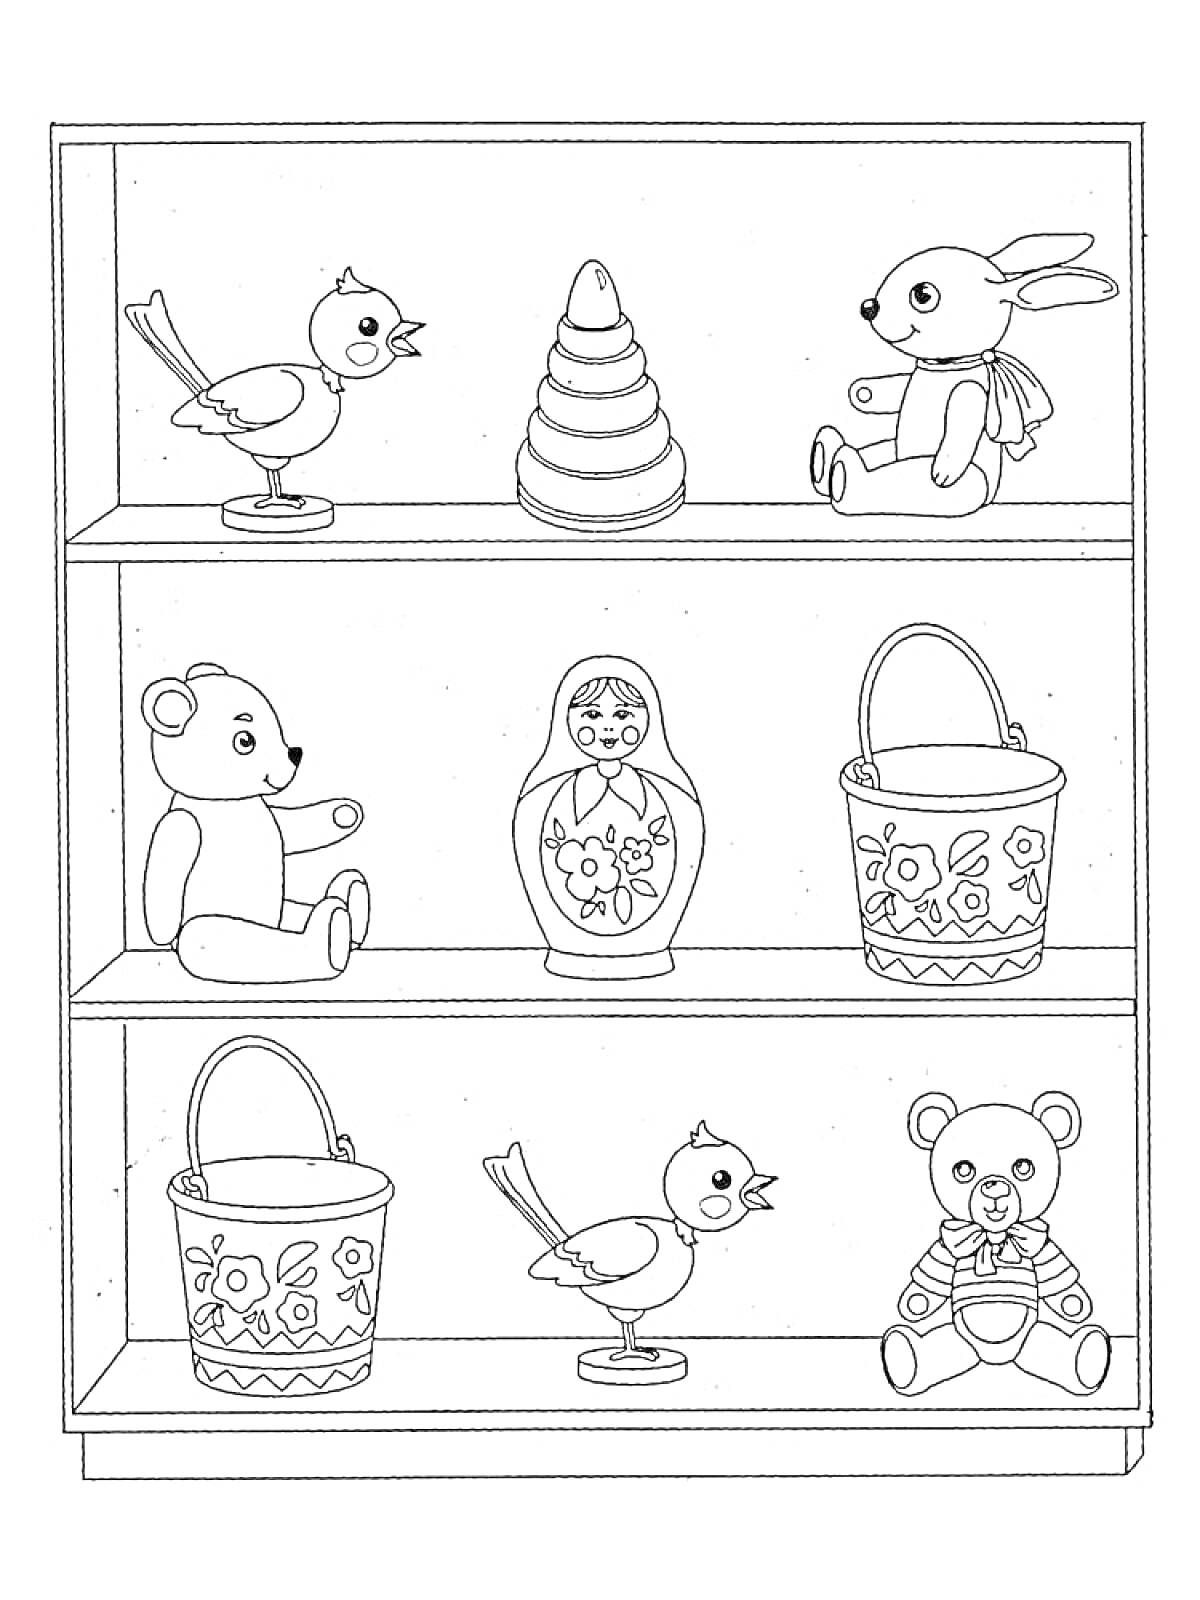 Раскраска Полка в магазине игрушек с двумя птичками, пирамидкой, зайцем, двумя медведями, матрешкой и двумя ведёрками